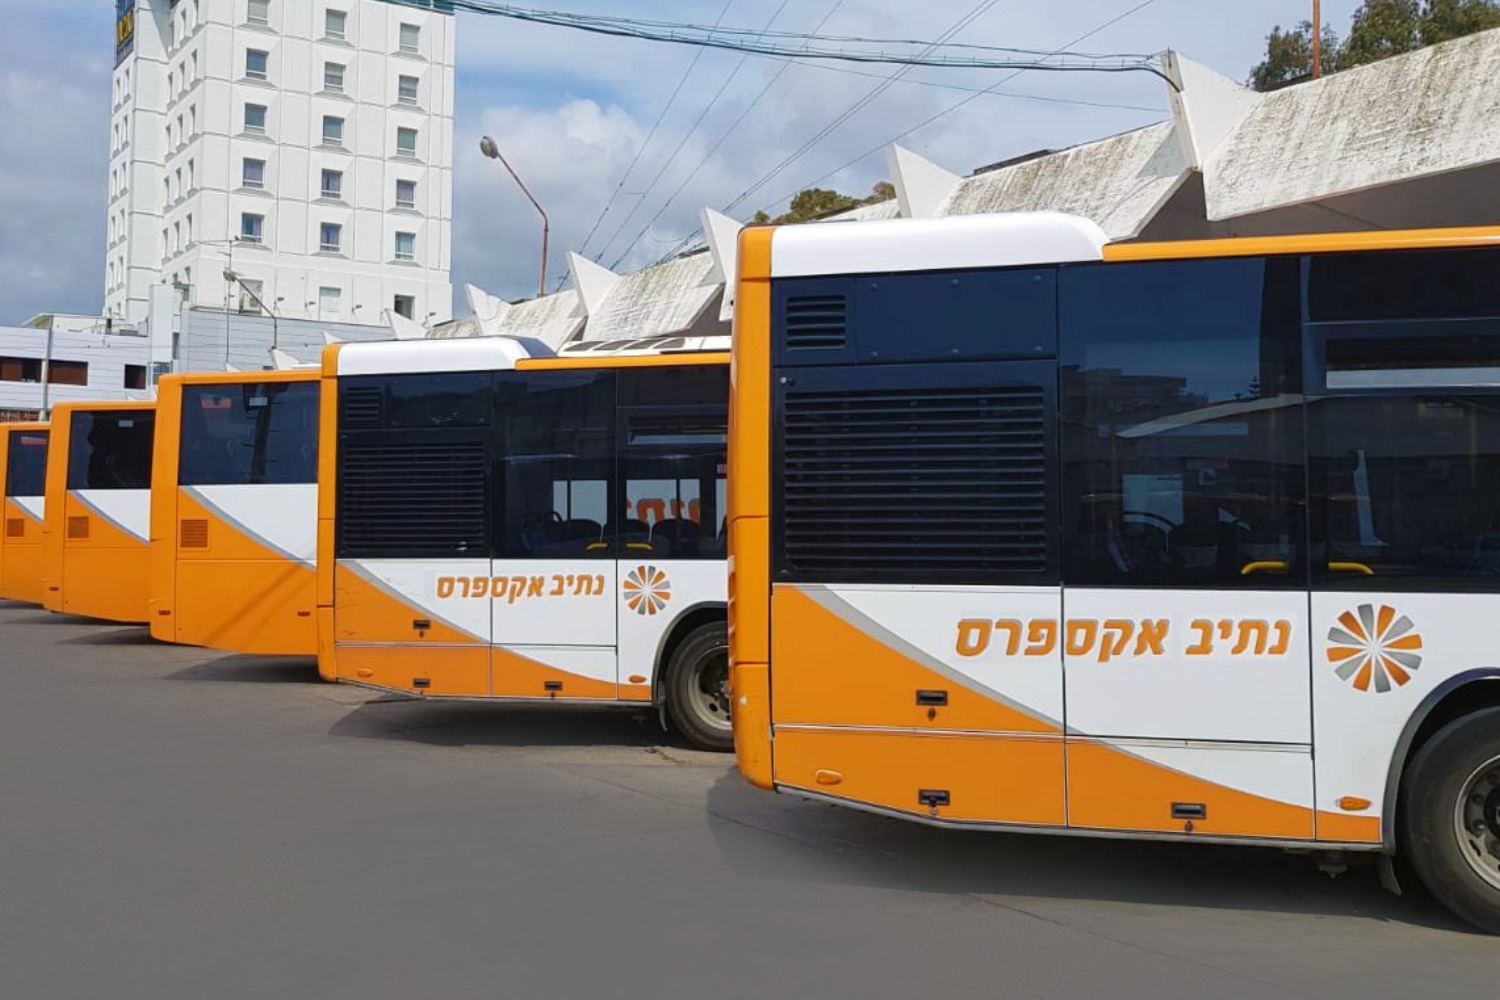 נתיב אקספרס נבחרה למפעילת התחבורה הציבורית הטובה בישראל